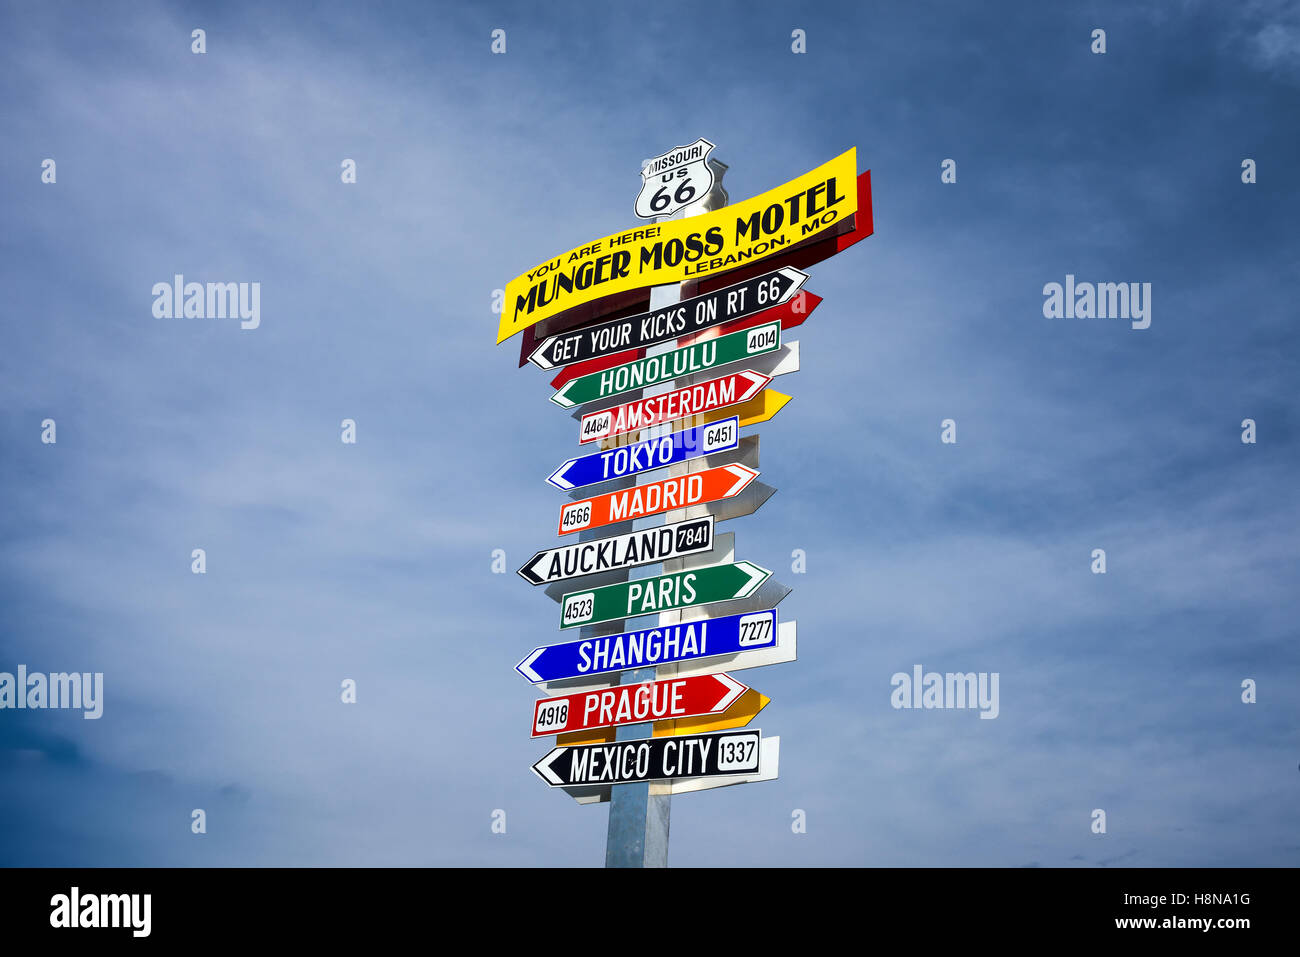 Lustige Richtung Wegweiser im Munger Moss Motel mit Namen von berühmten Städten weltweit Stockfoto